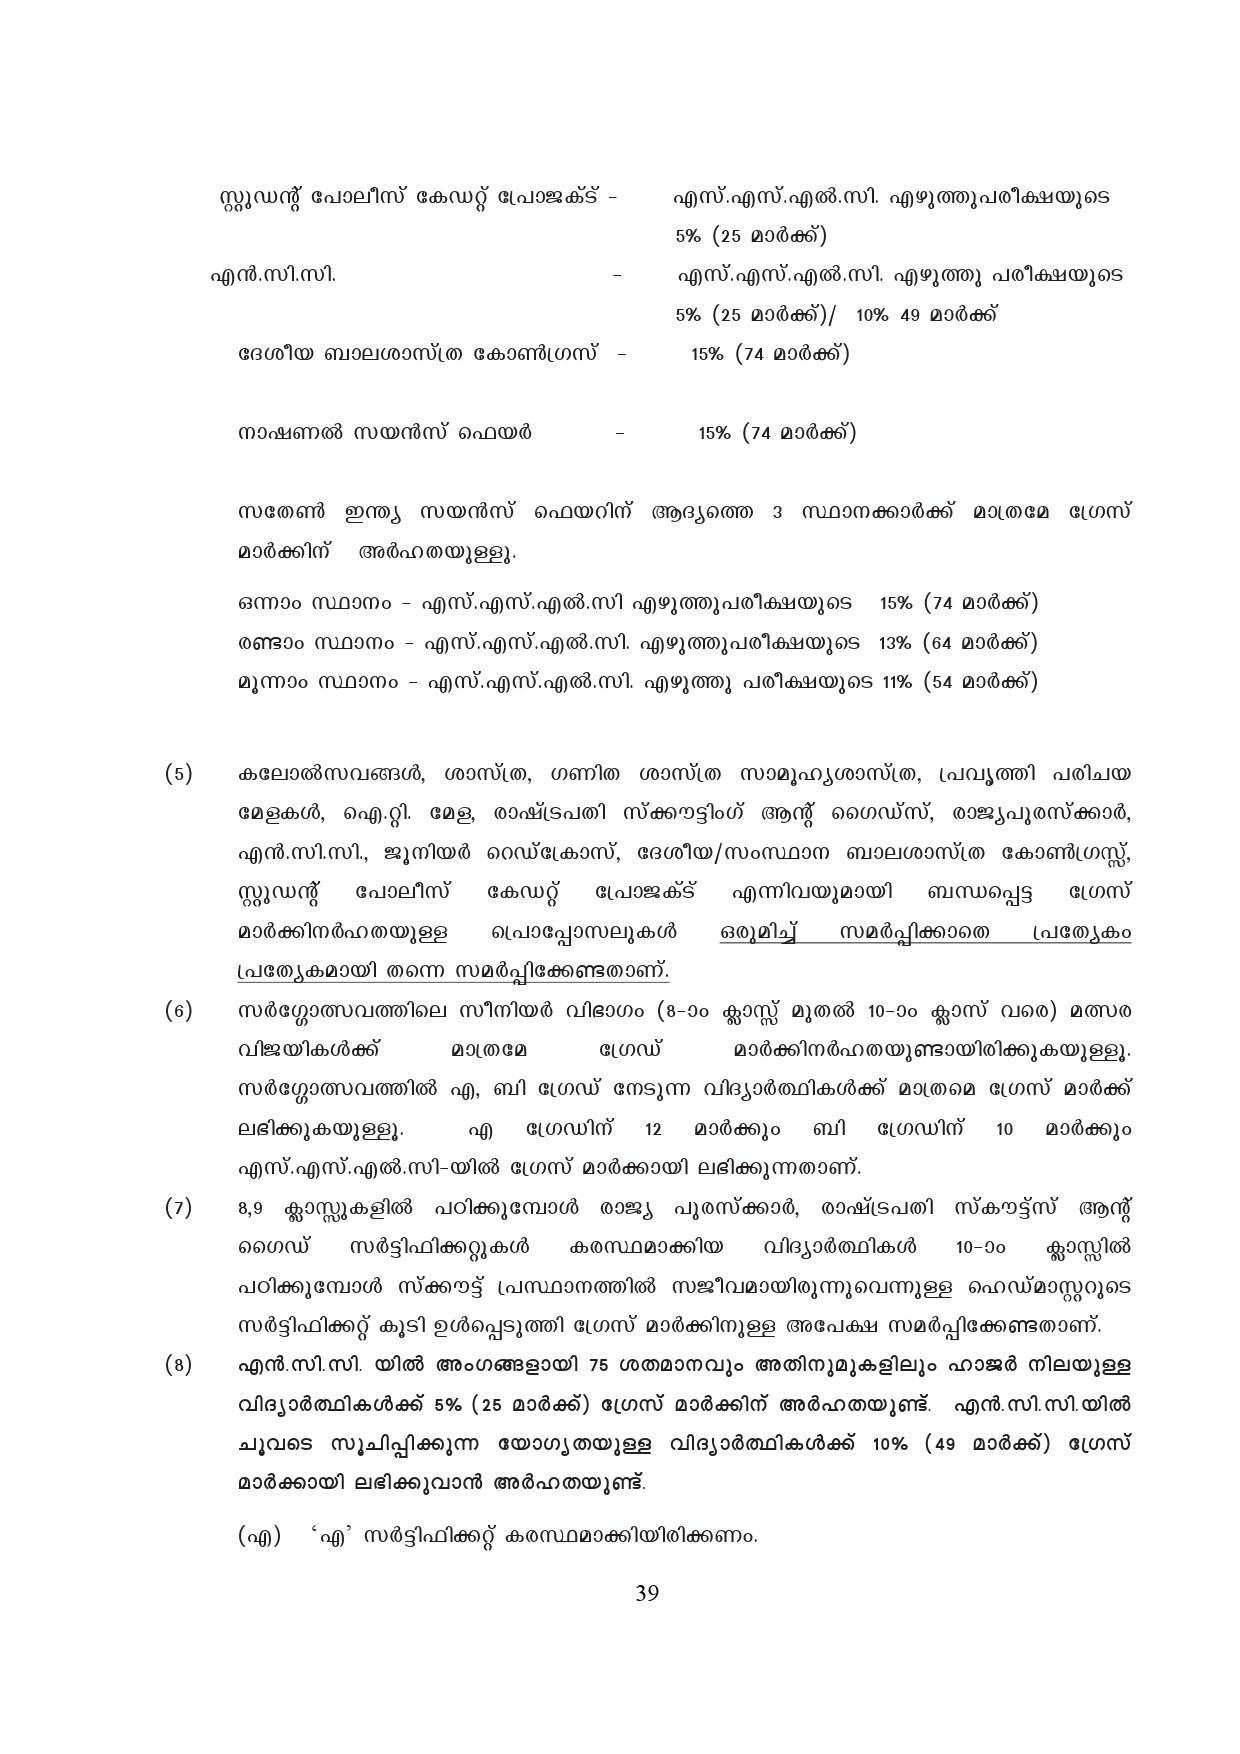 Kerala SSLC Exam Result 2019 - Notification Image 39